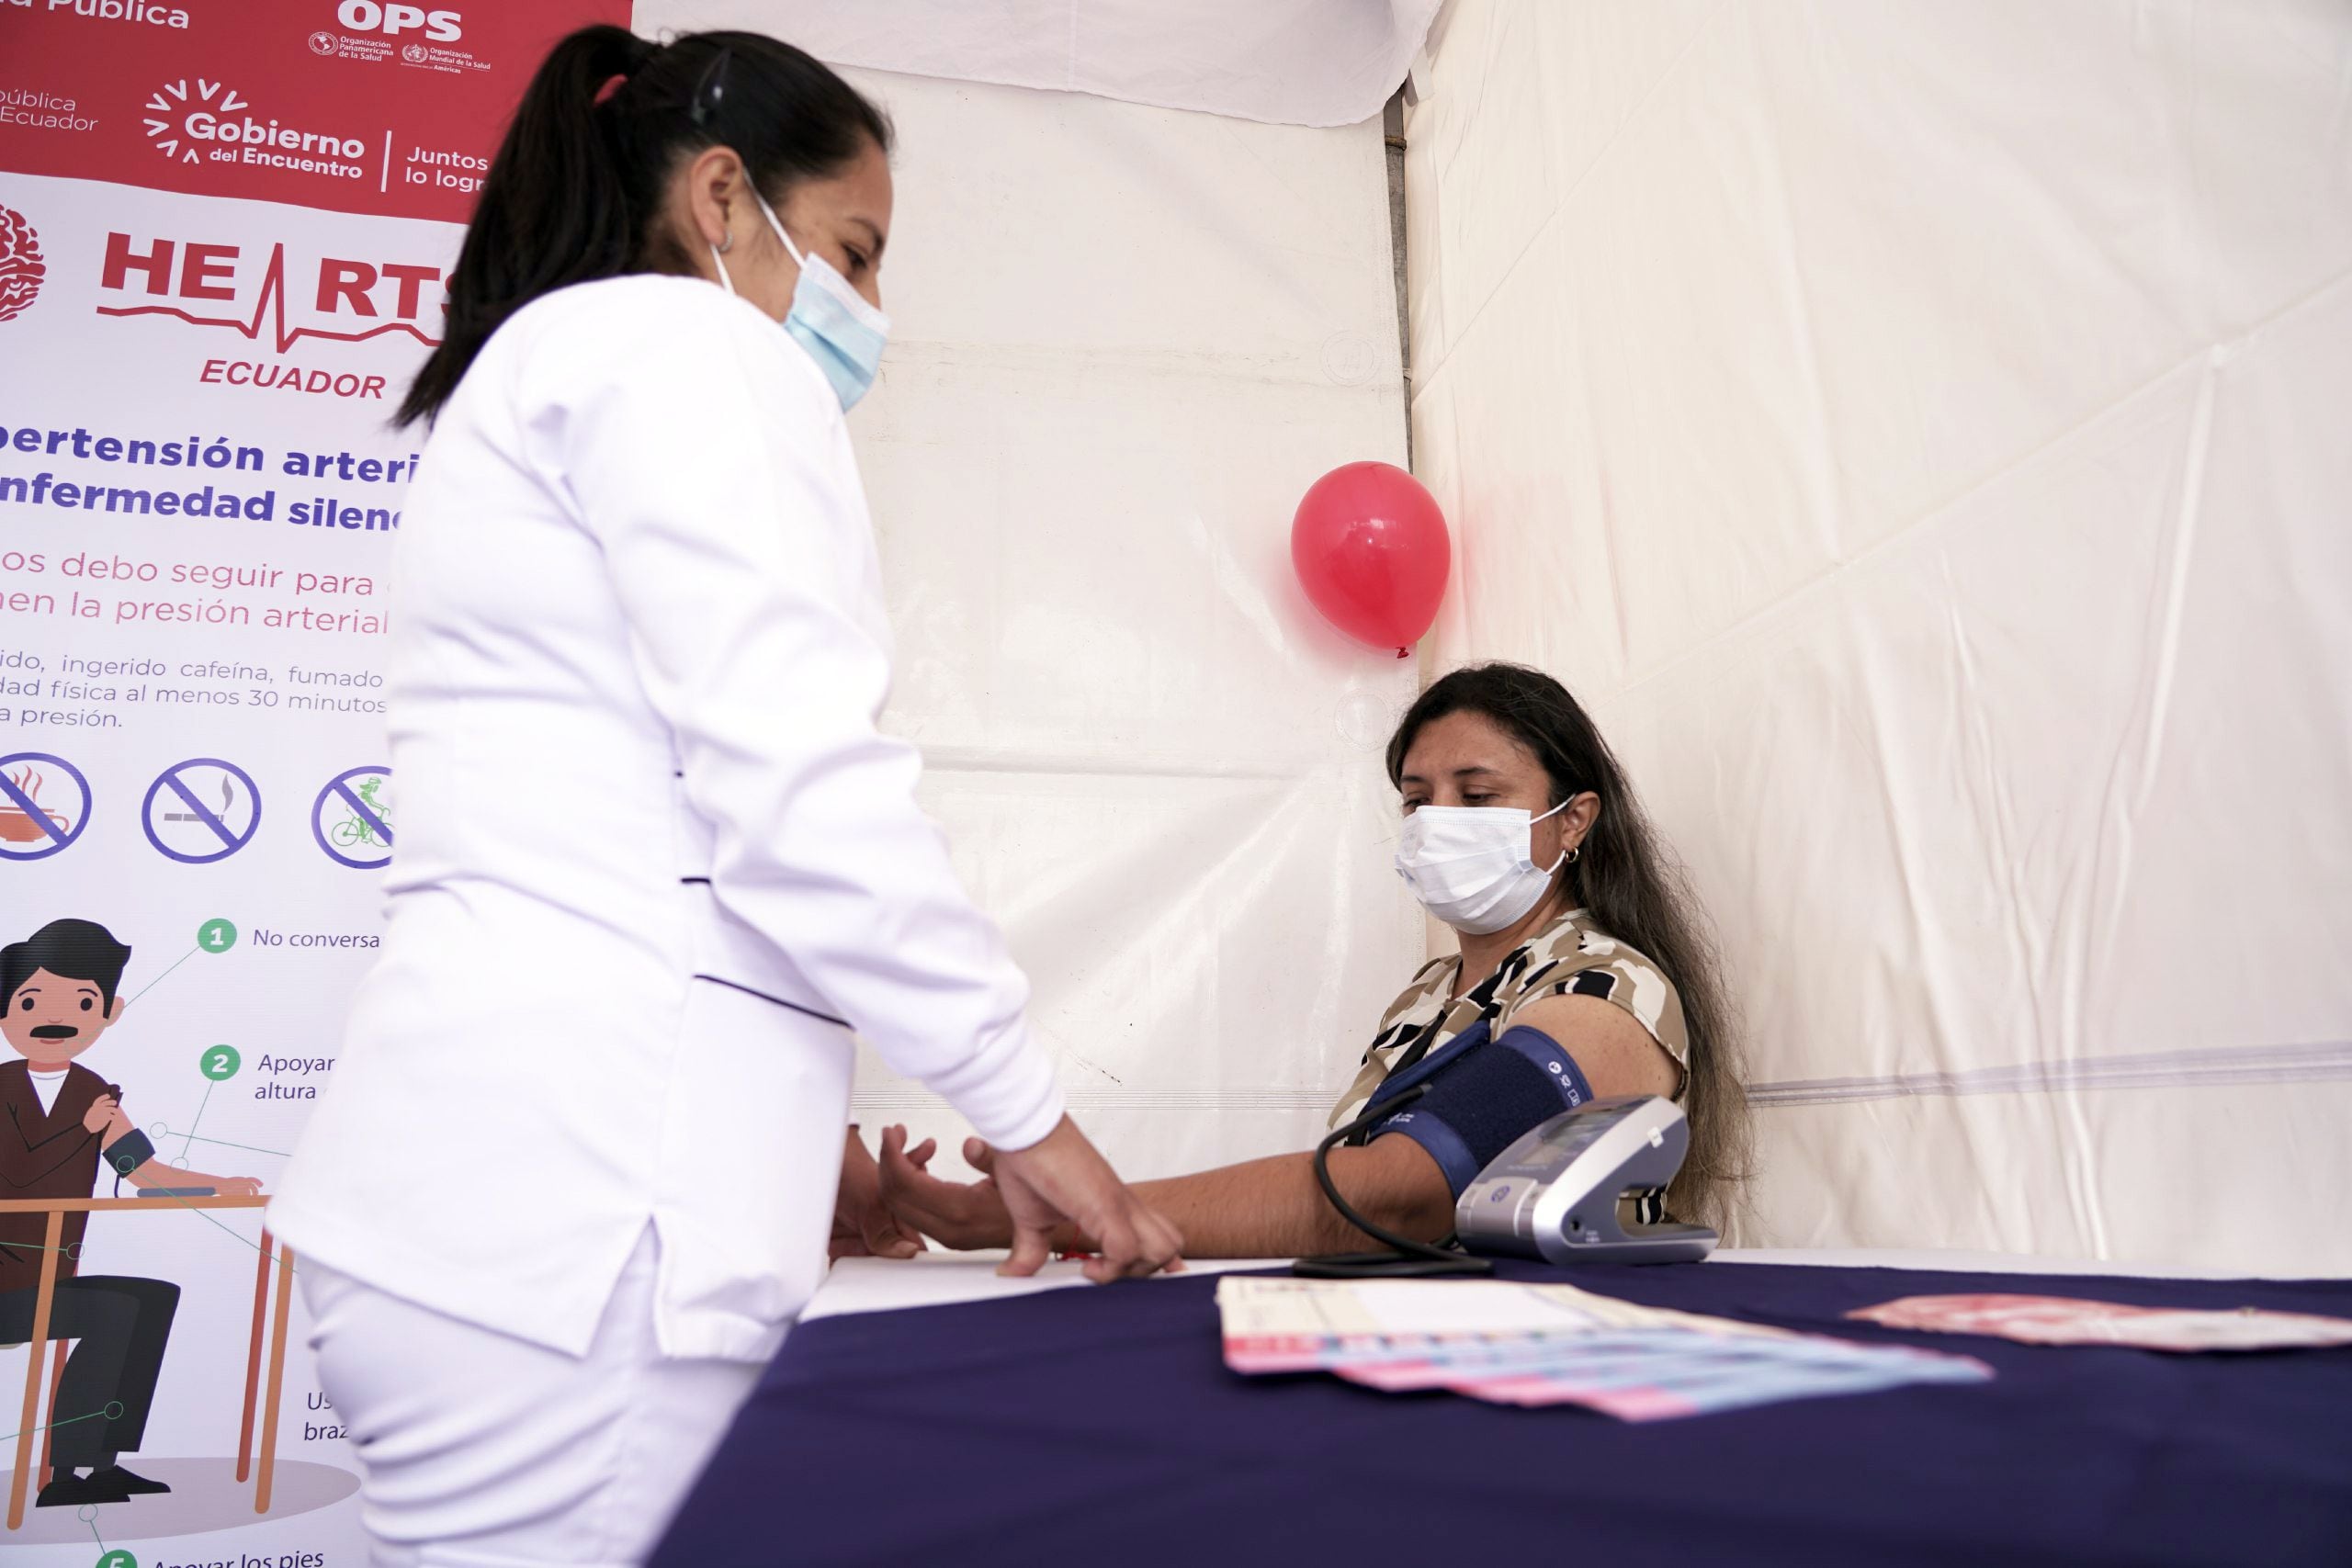 Hipertensión, una enfermedad que afecta a uno de cada cinco ecuatorianos